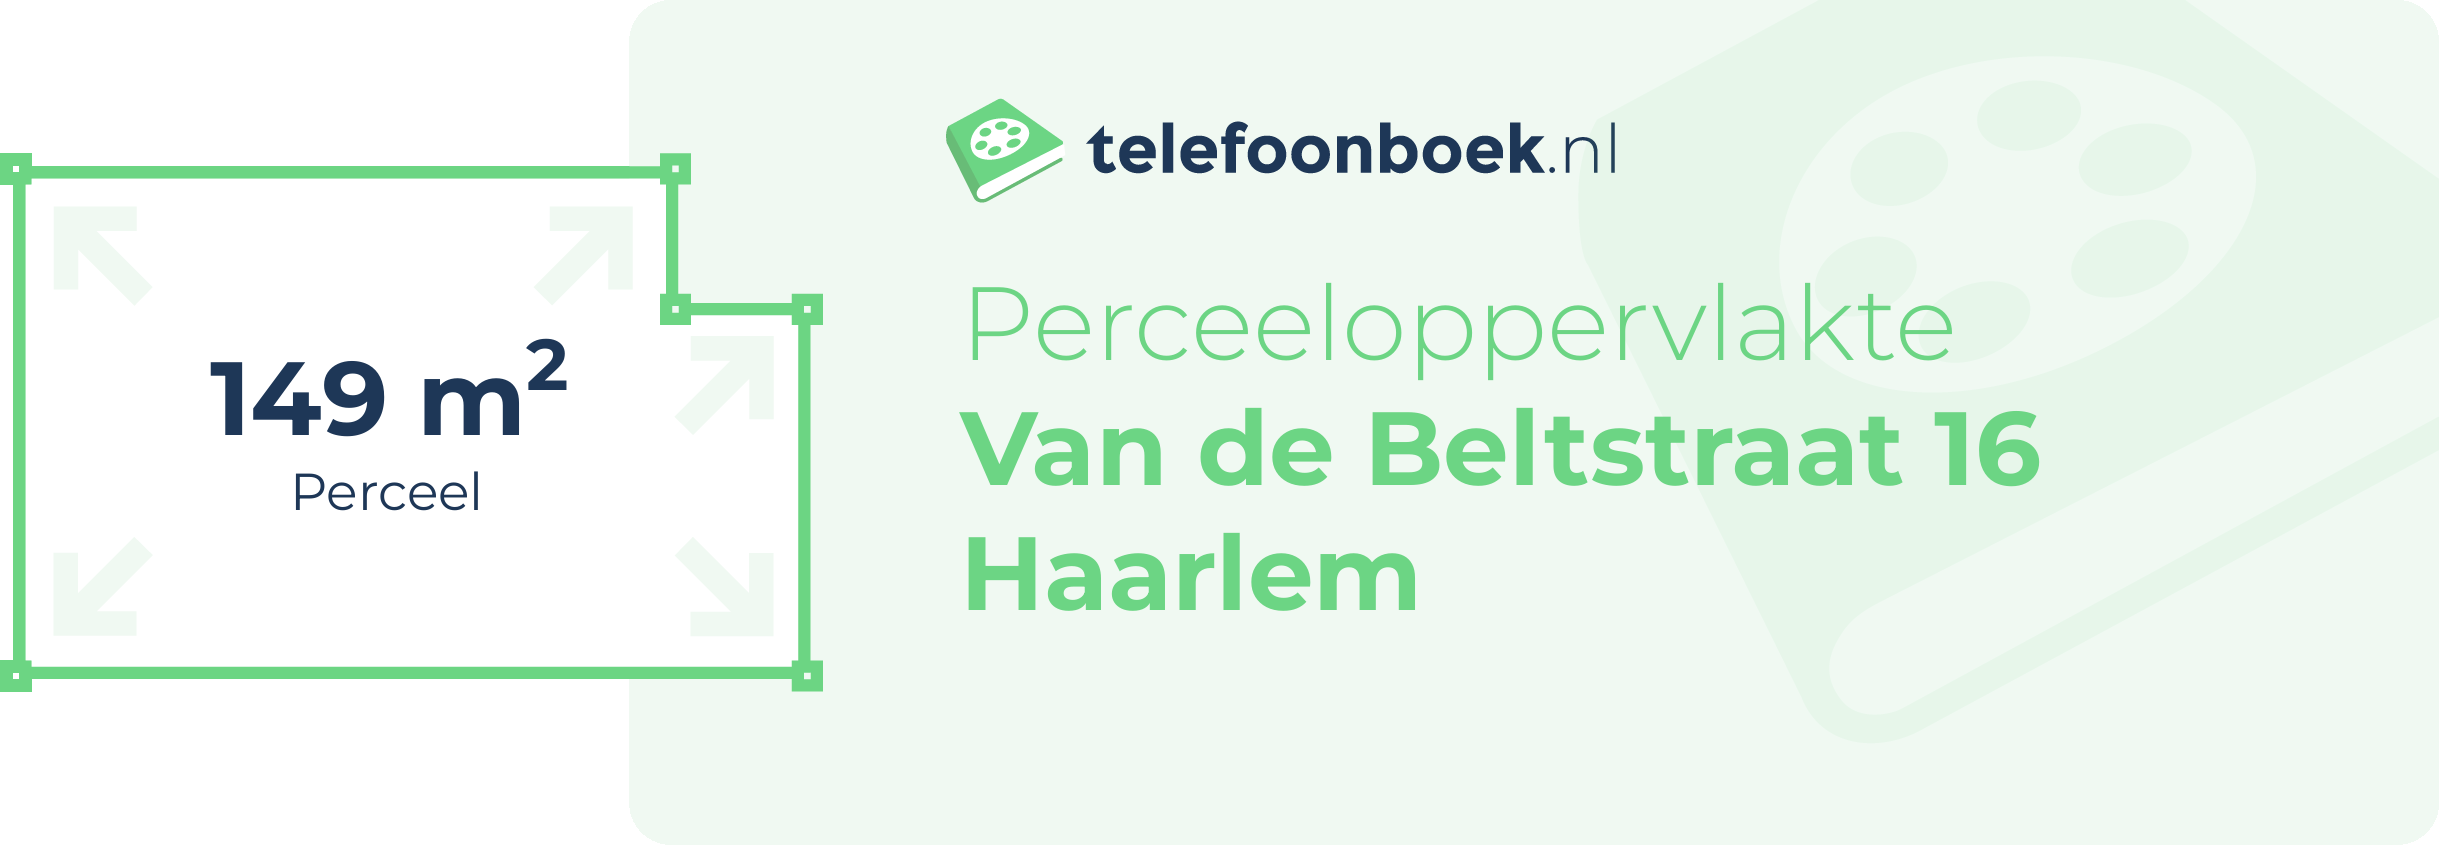 Perceeloppervlakte Van De Beltstraat 16 Haarlem